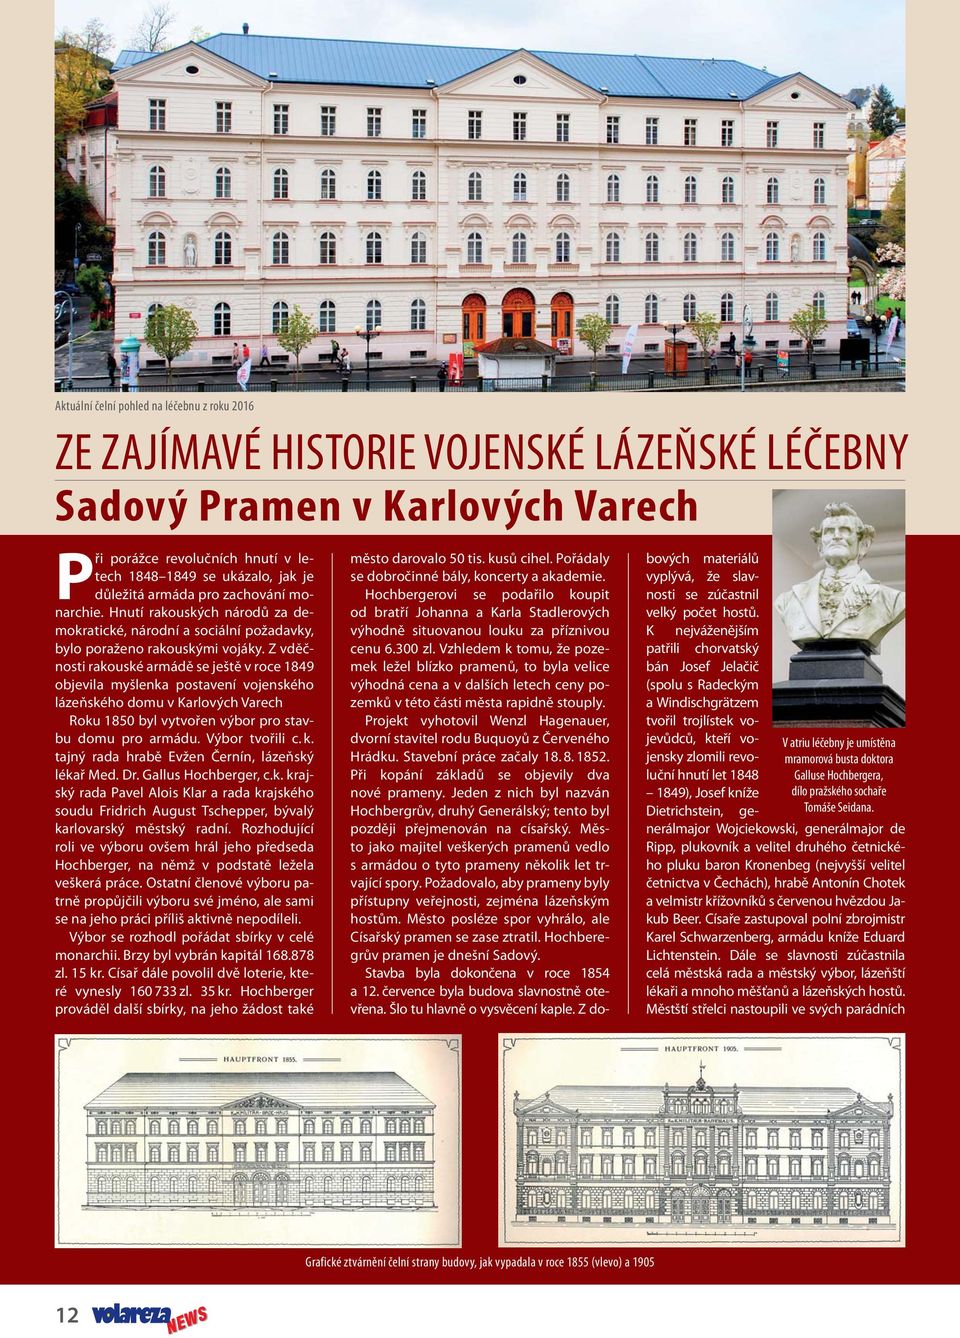 Z vděčnosti rakouské armádě se ještě v roce 1849 objevila myšlenka postavení vojenského lázeňského domu v Karlových Varech Roku 1850 byl vytvořen výbor pro stavbu domu pro armádu. Výbor tvořili c. k.